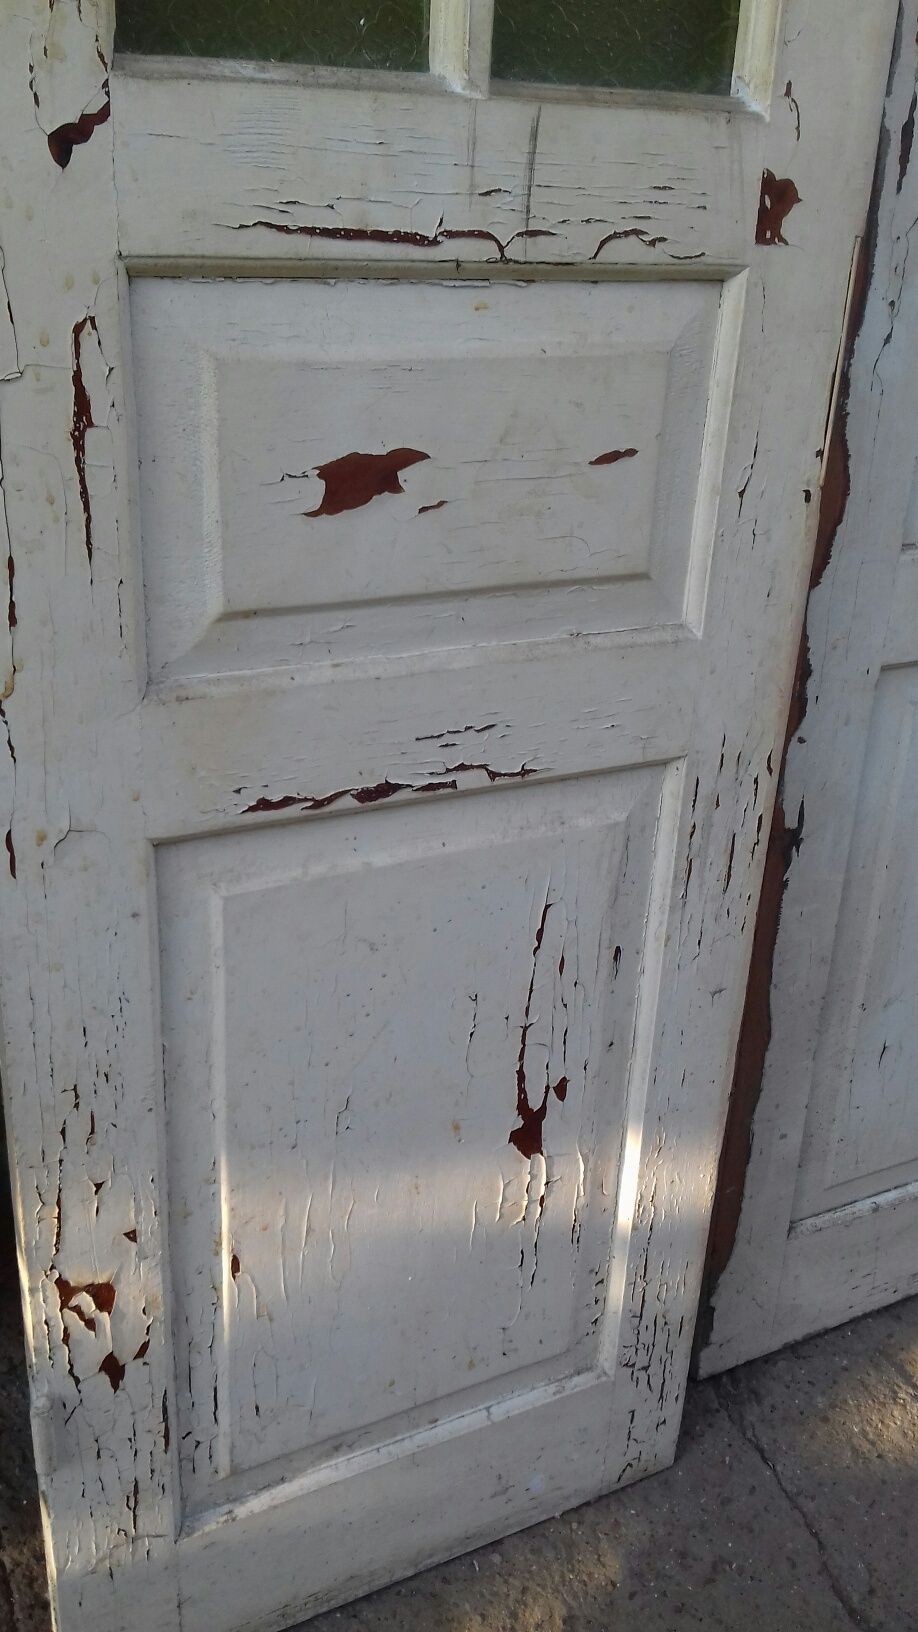 Дверь деревянная двухстворчатая